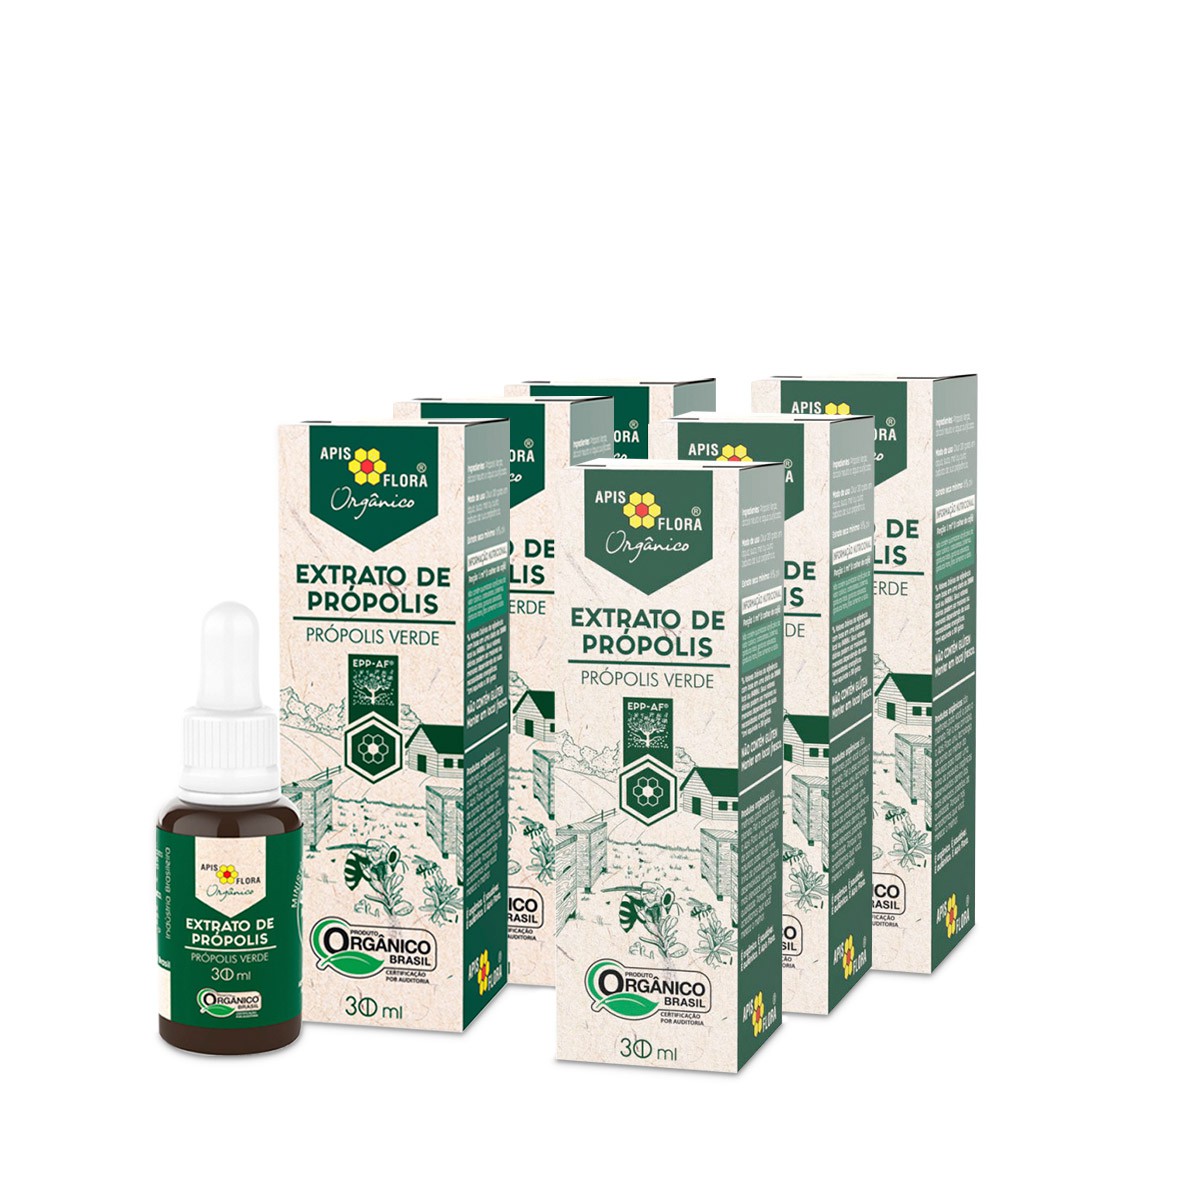 Extrato de Própolis Verde Orgânico 30 ml Apis Flora - Kit 6 unidades